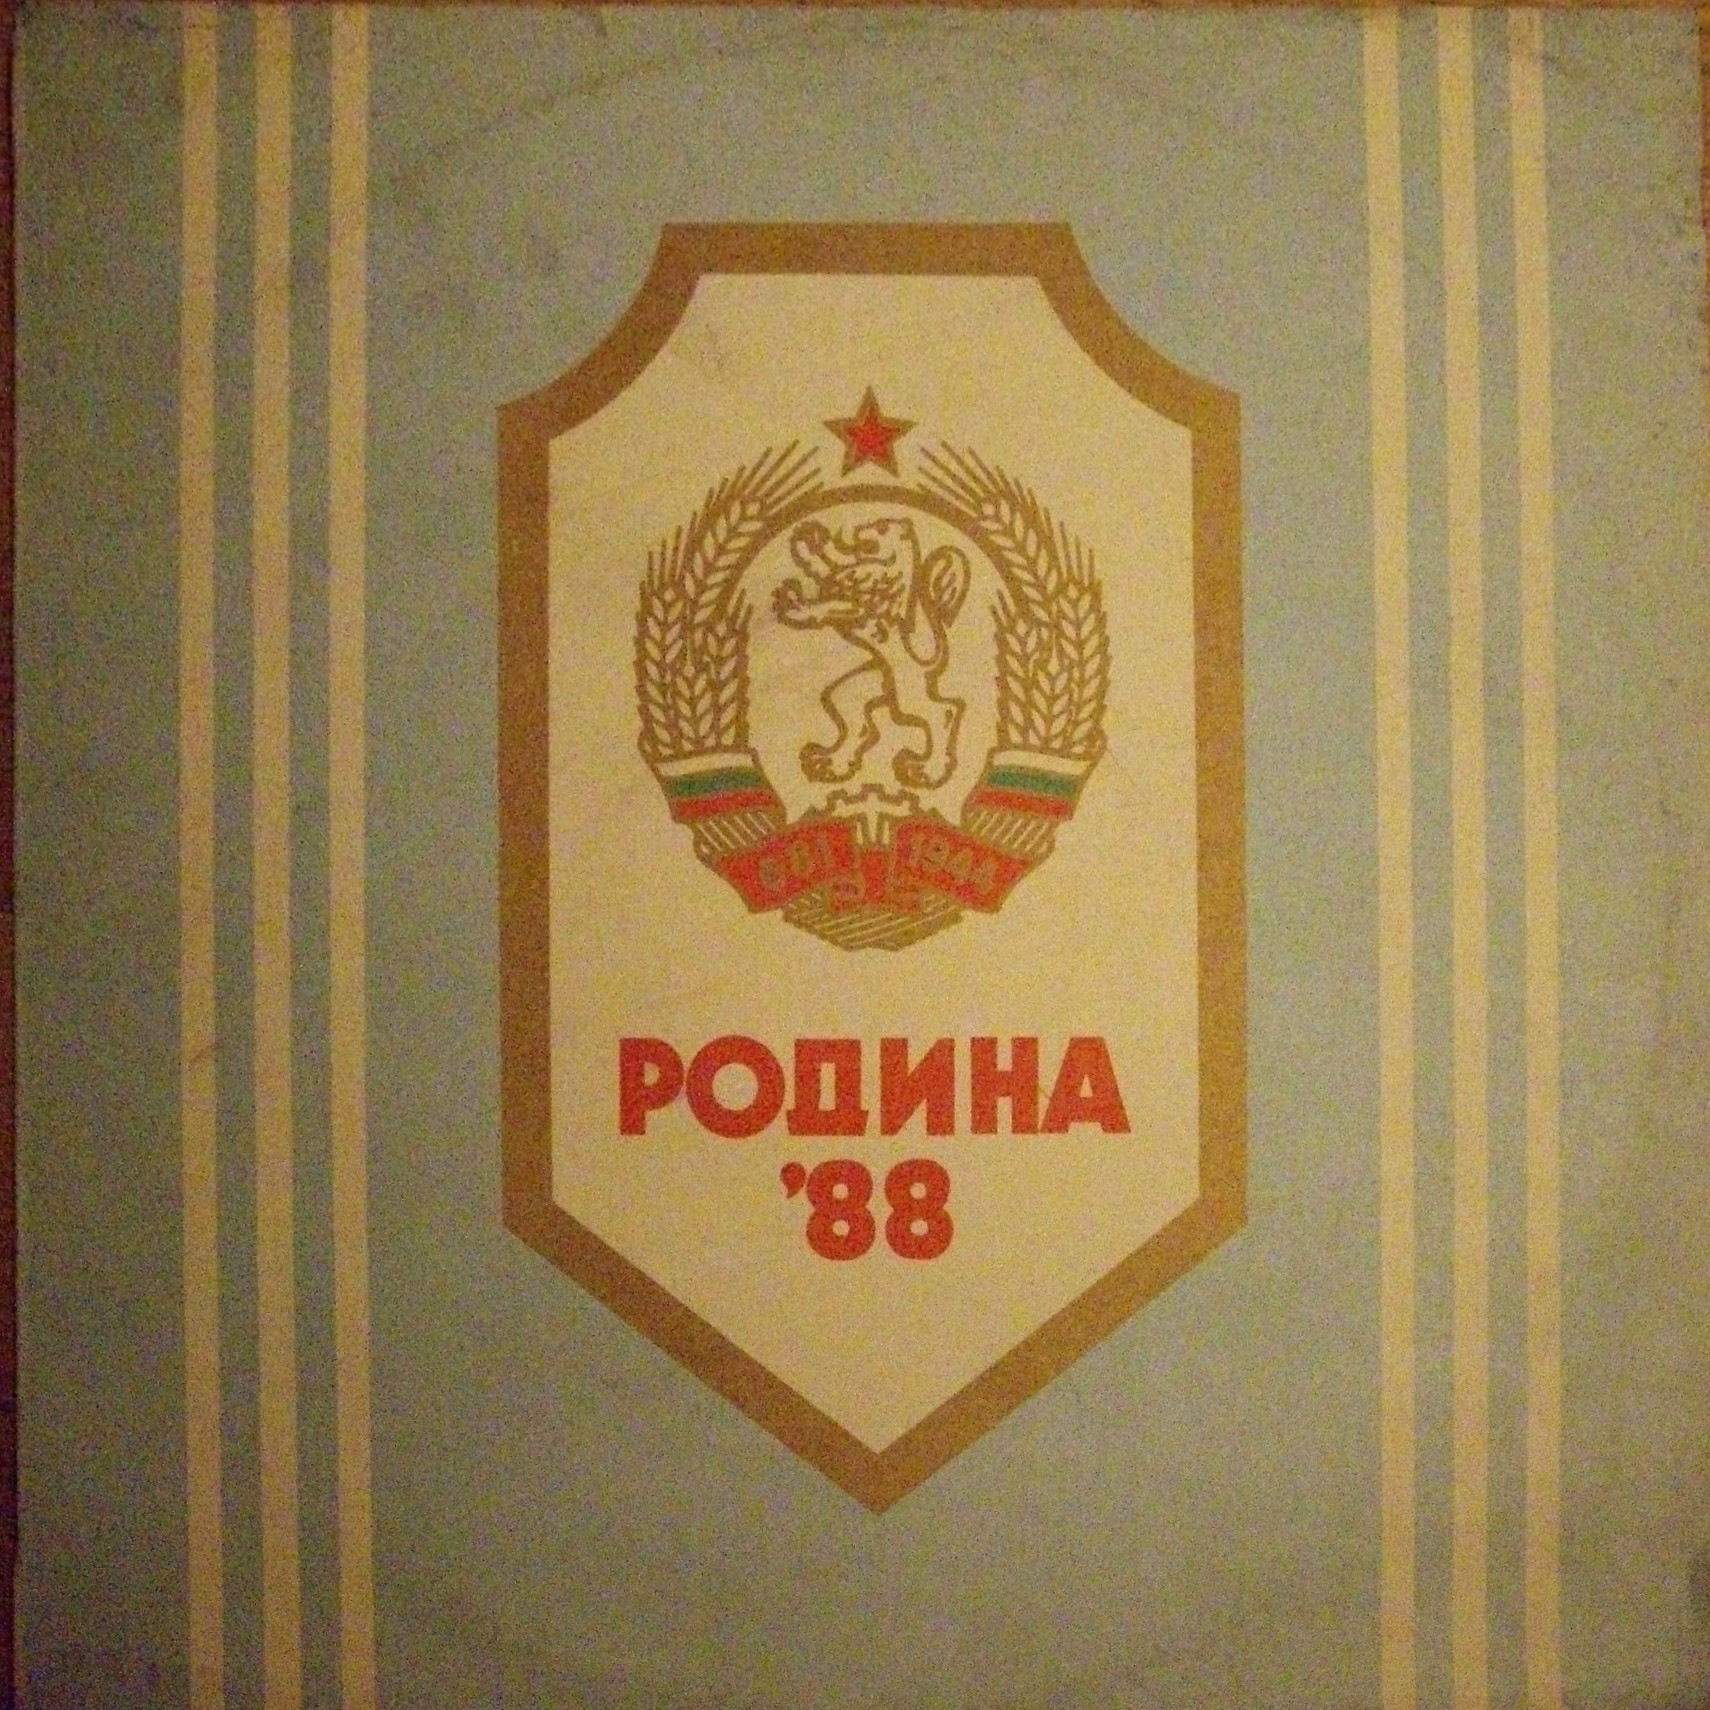 Родина'88: строеви песни. Изпълнява Представителен ансамбъл на Българската народна армия, диригент Чавдар Маждраков